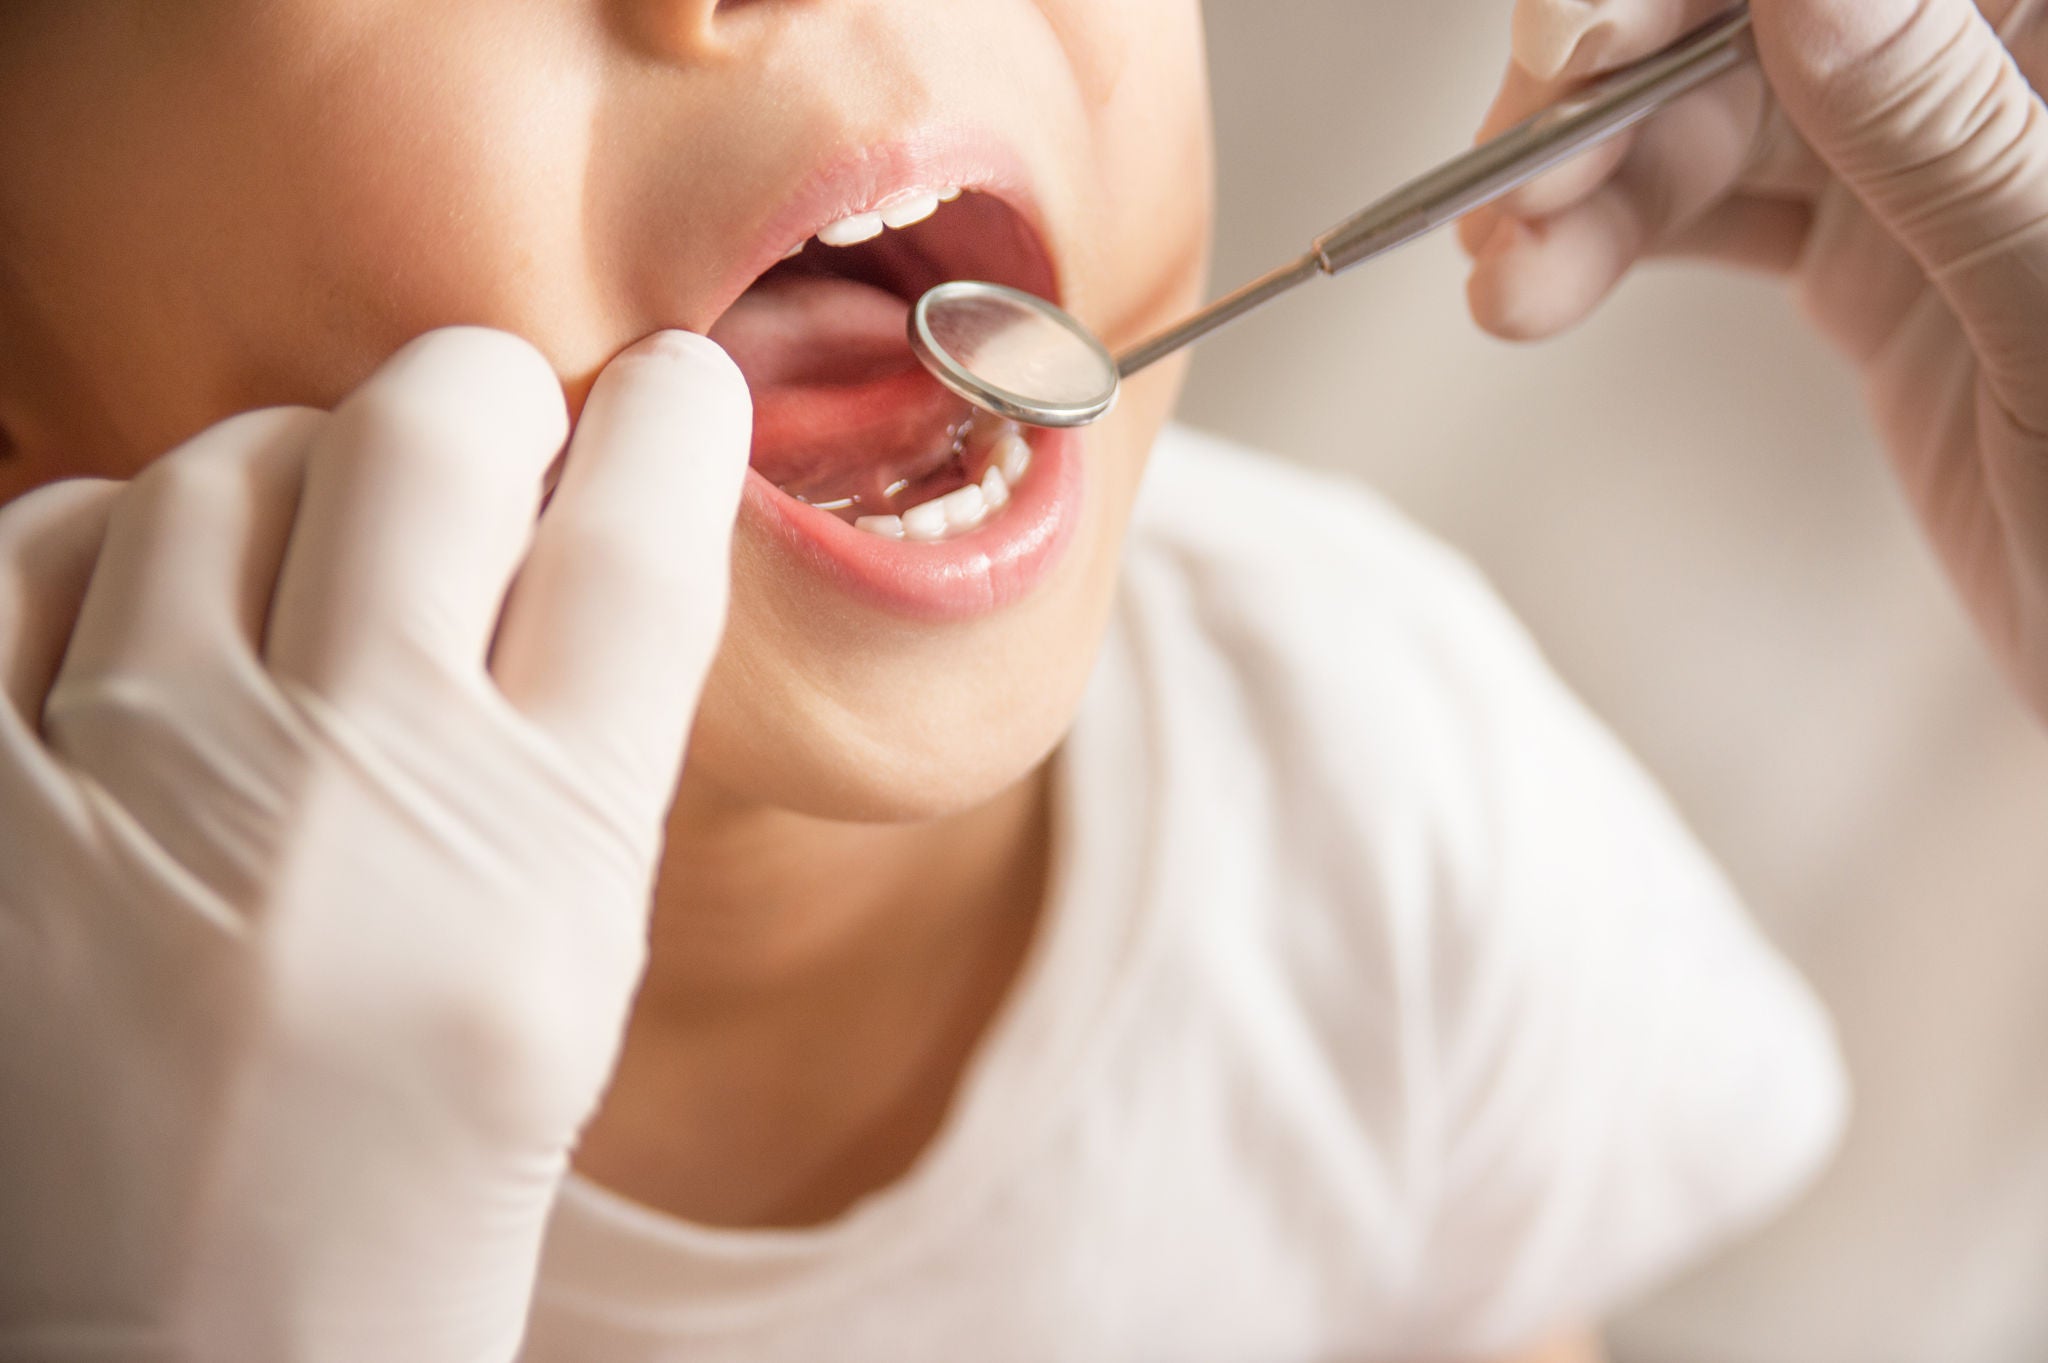 MIH o ipomineralizzazione dei denti nei bambini: trattamento e raccomandazioni